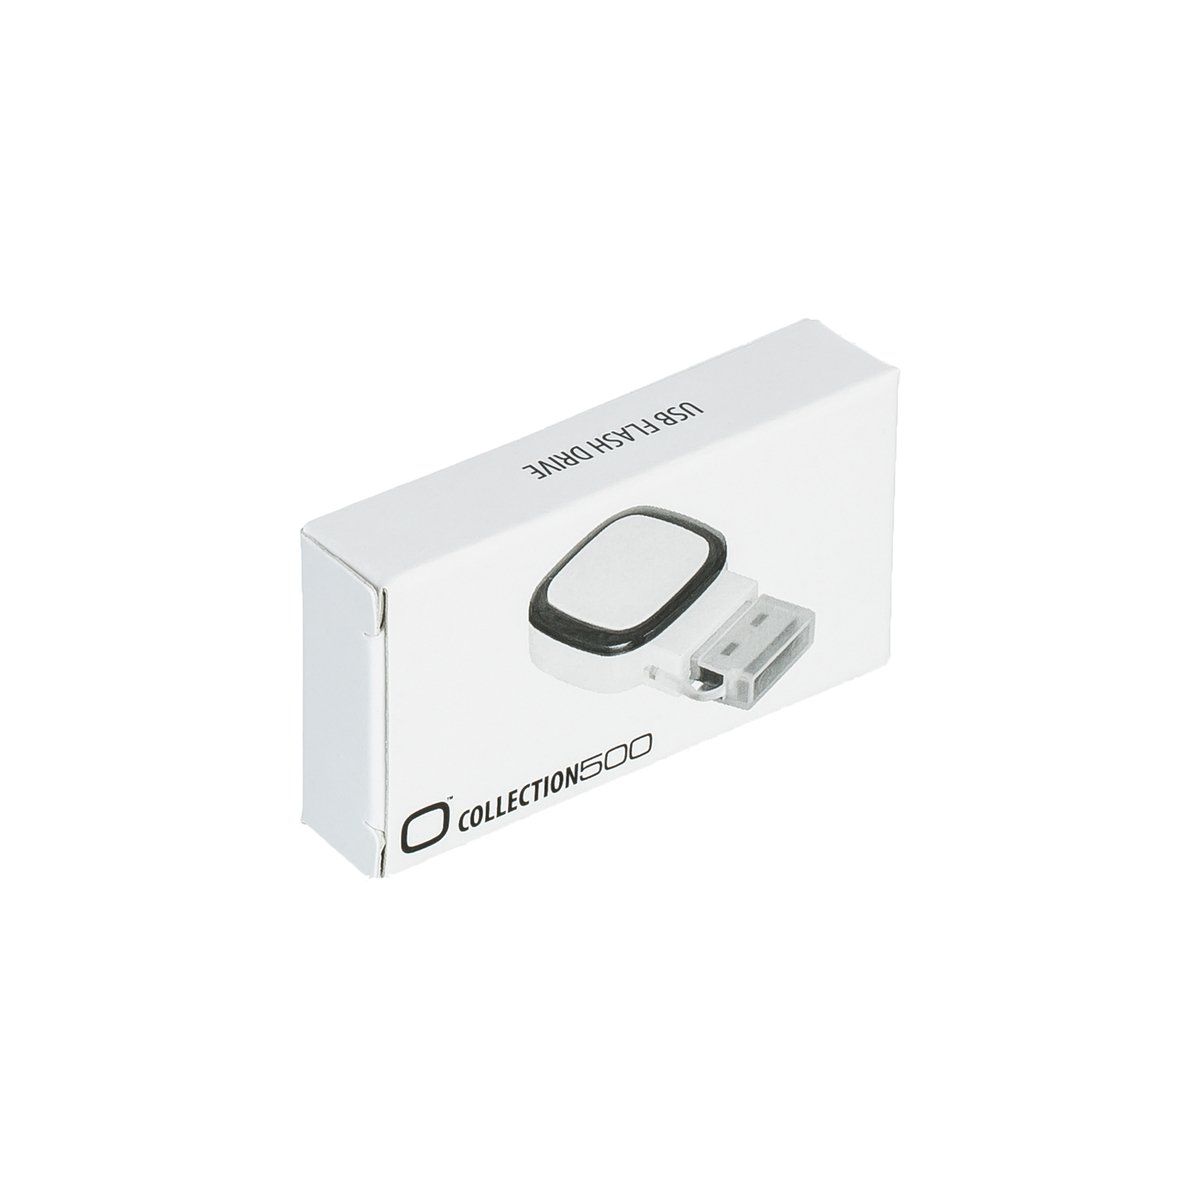 USB-Speicherstick COLLECTION 500 magenta 8GB